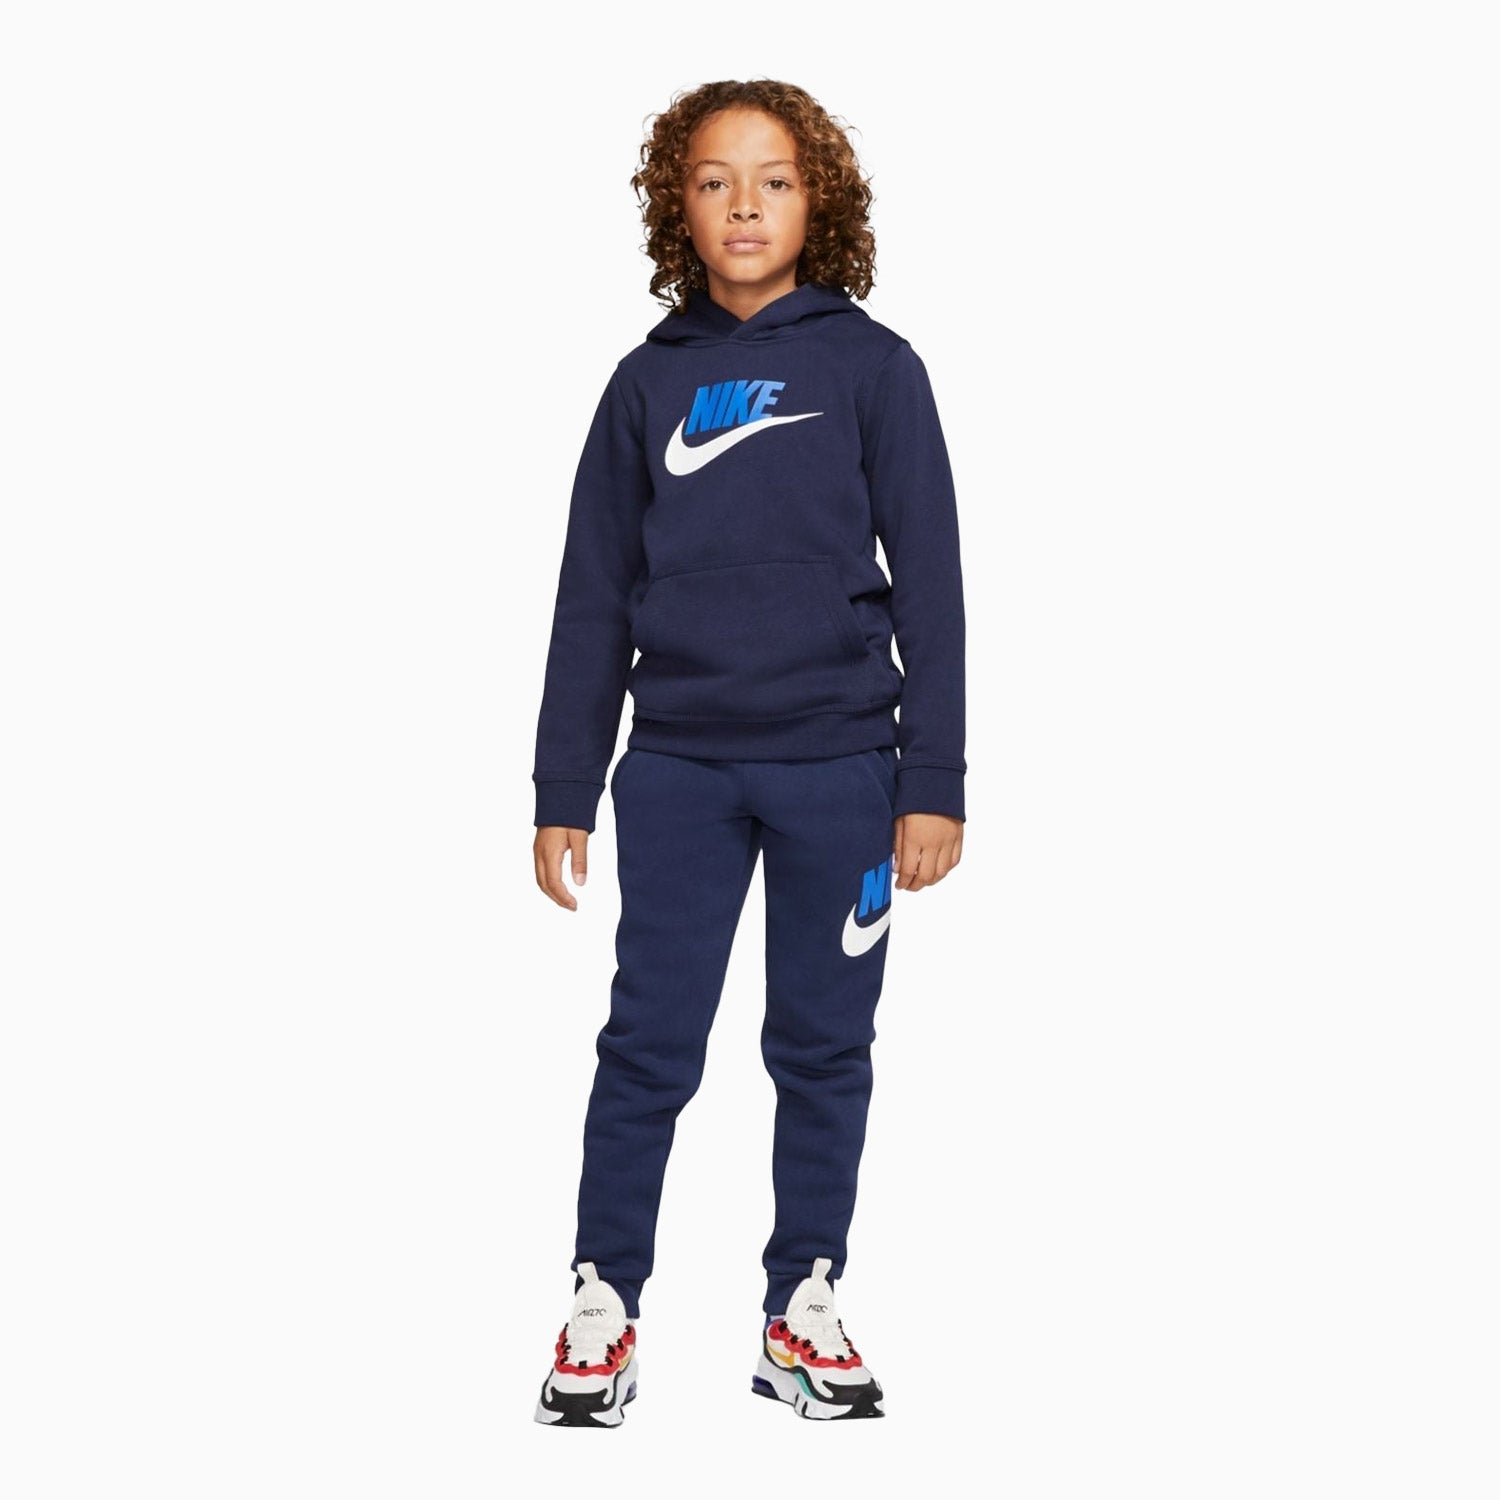 rechtbank Hobart Verlichten Nike Kid's Sportswear Club Fleece Jogging Suit